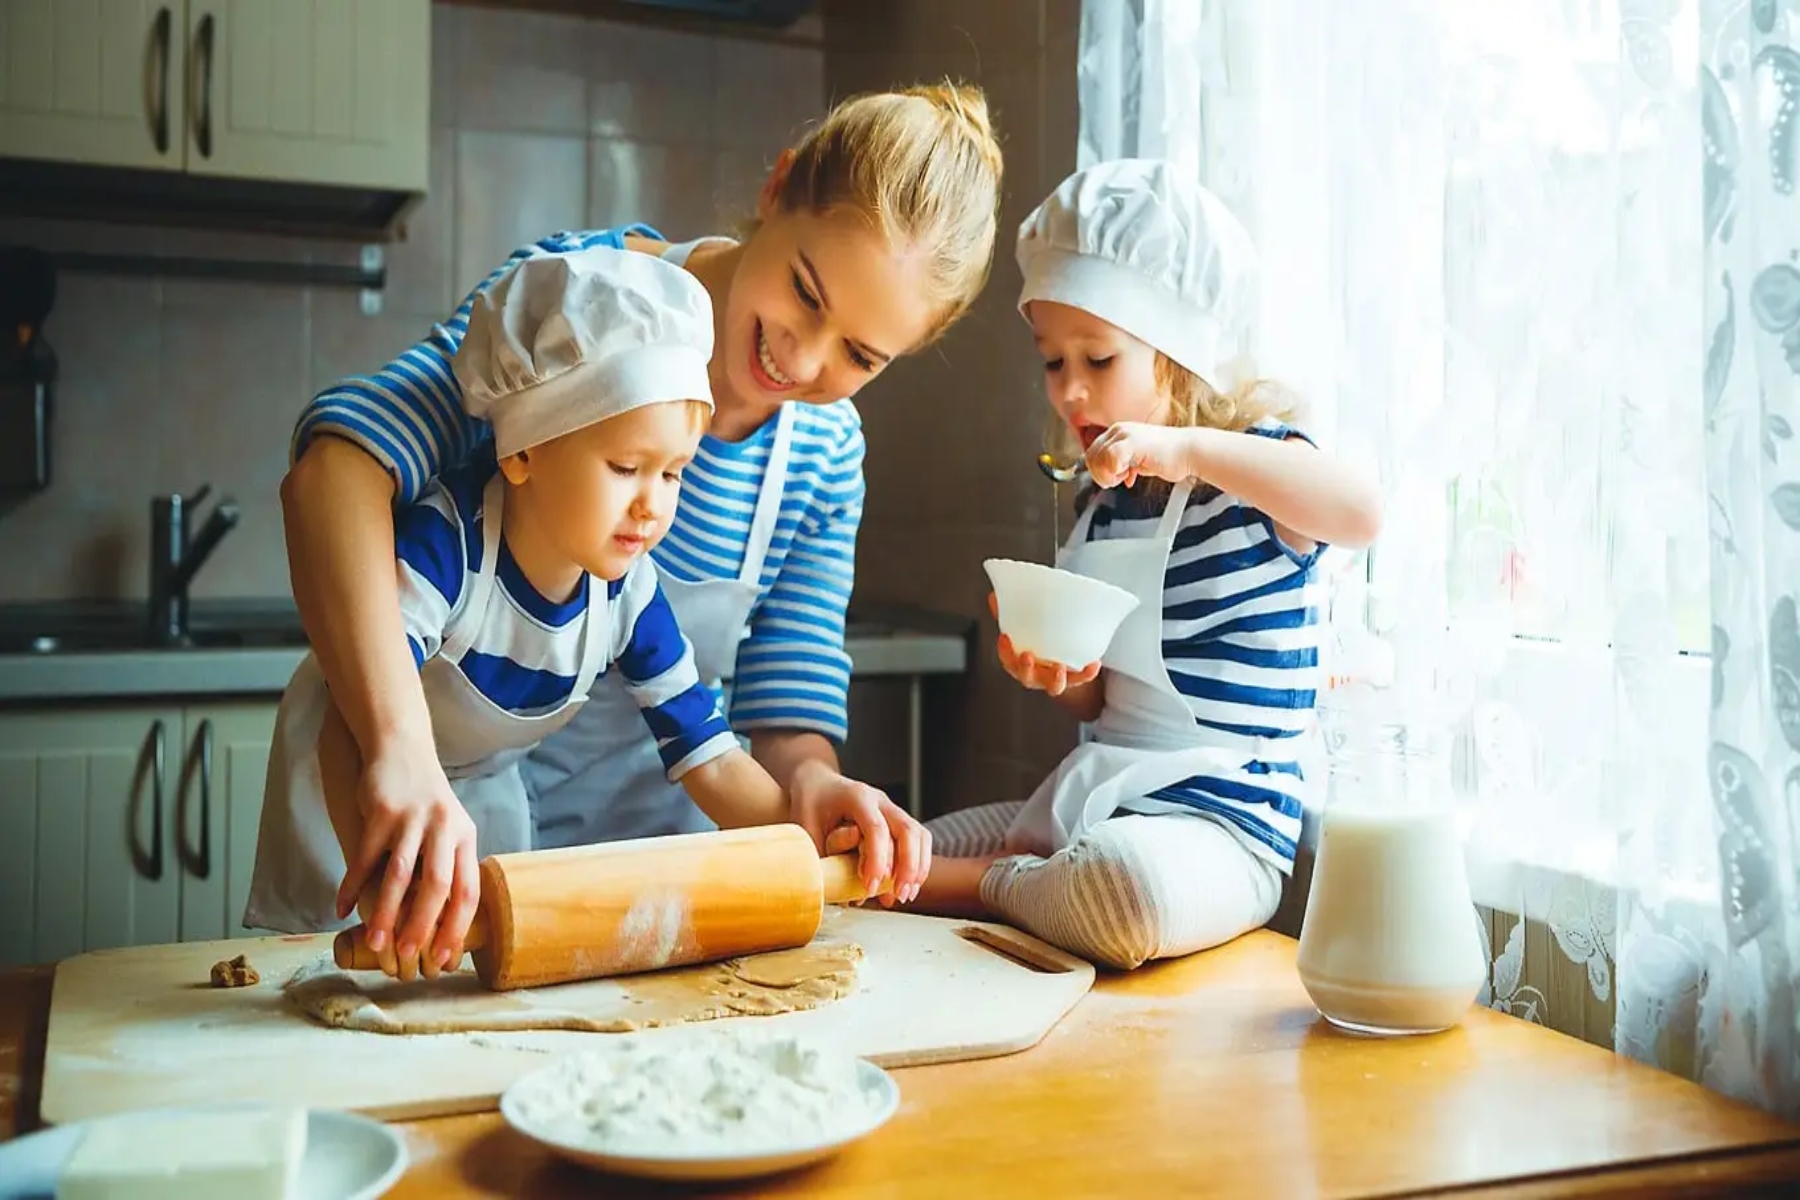 Μαγείρεμα παιδιά: Ποια φαγητά μπορείτε να μαγειρέψετε μαζί με τα παιδιά σας;